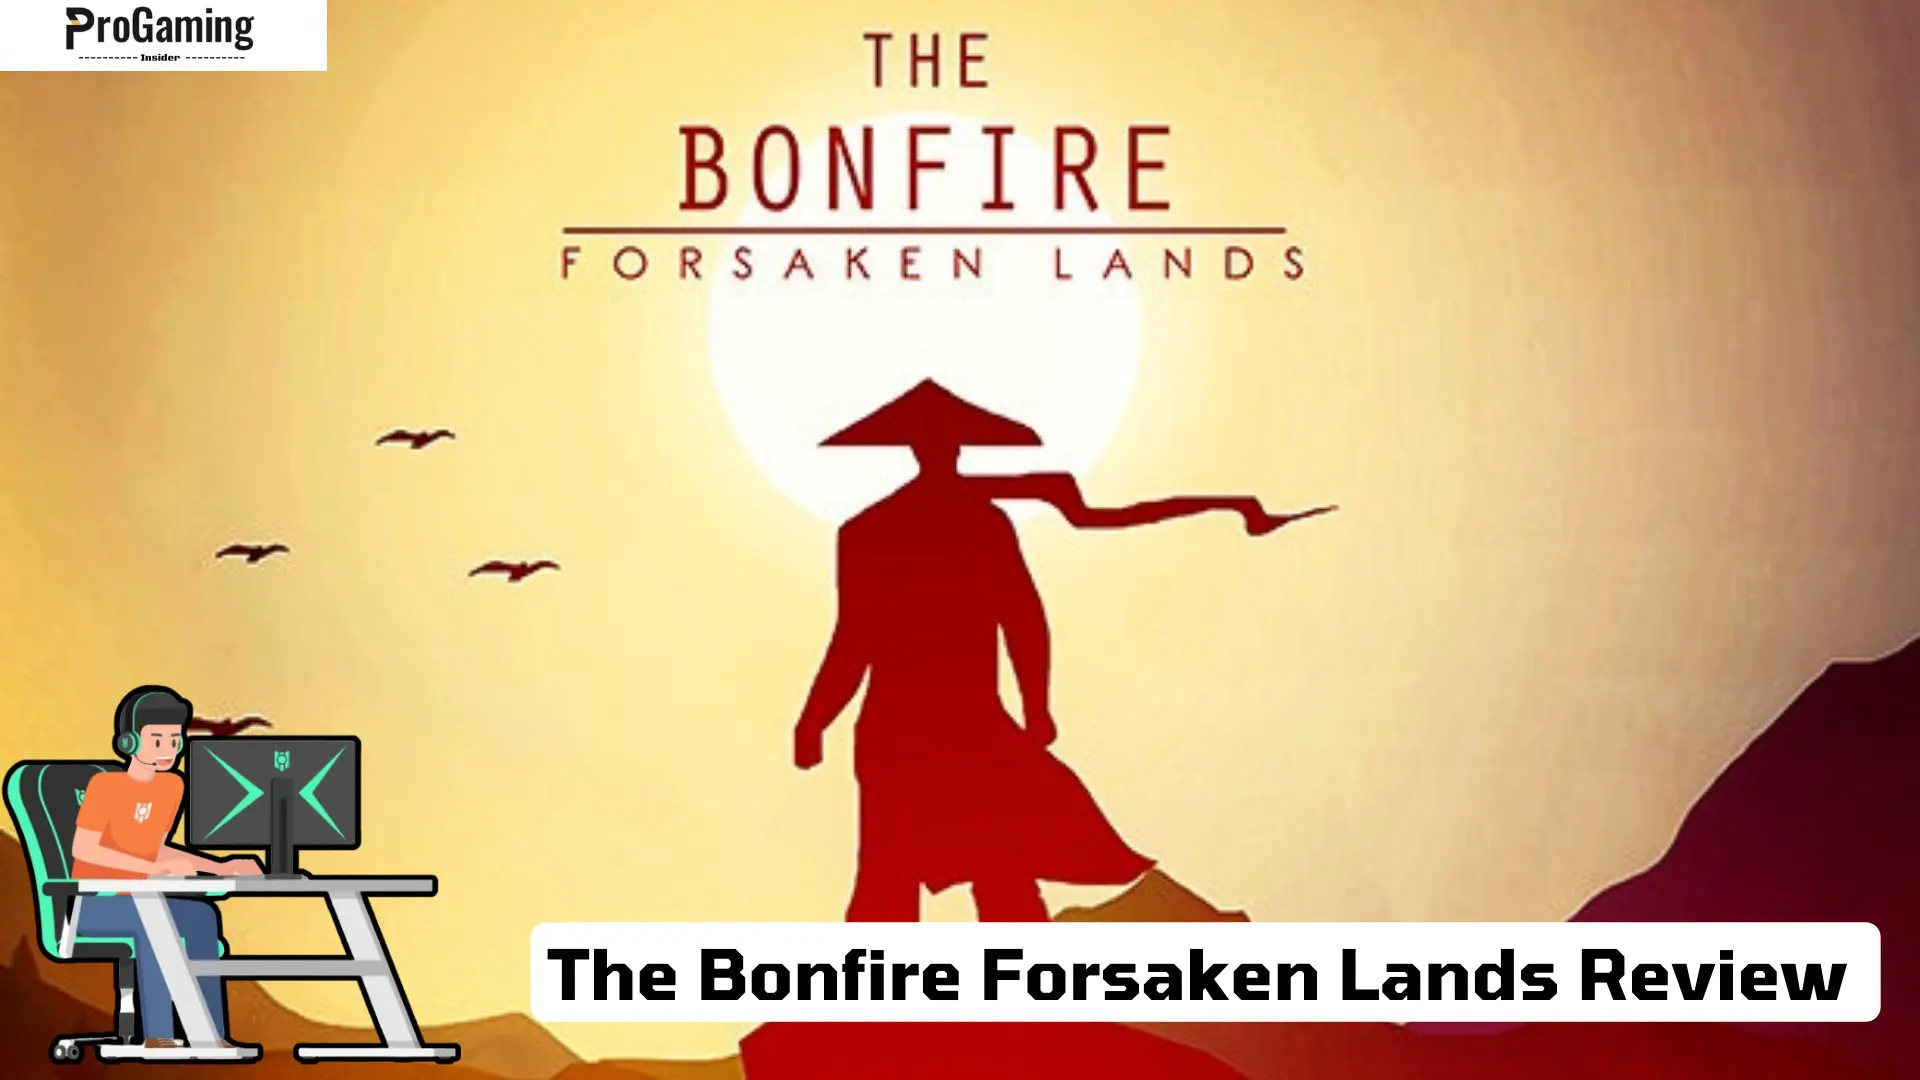 The Bonfire Forsaken Lands Review